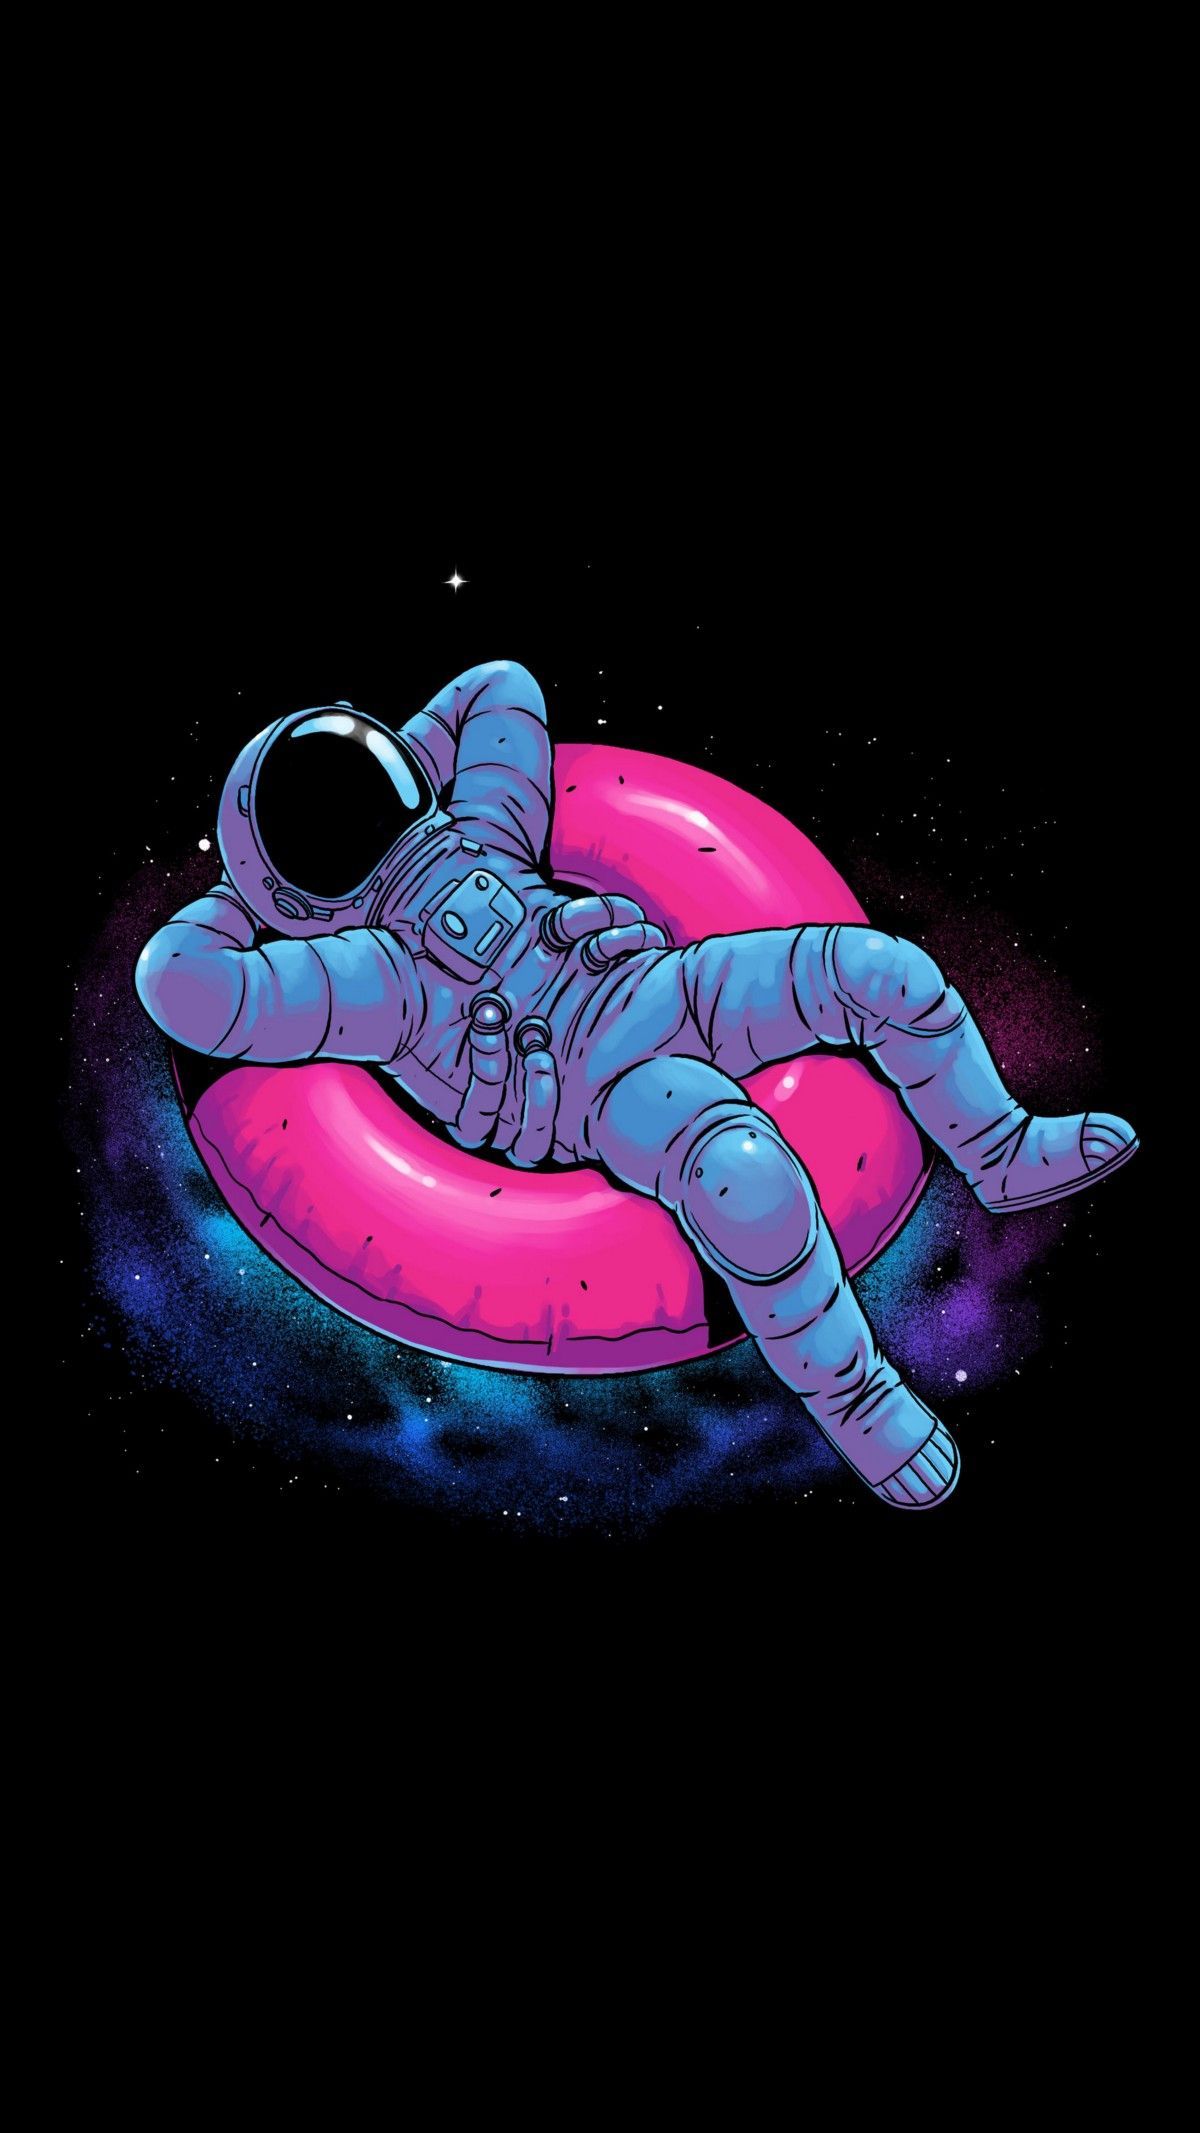 Cartoon, Astronaut, Illustration, Graphic design, Space, Animation. Astronaut wallpaper, Wallpaper space, Astronaut illustration